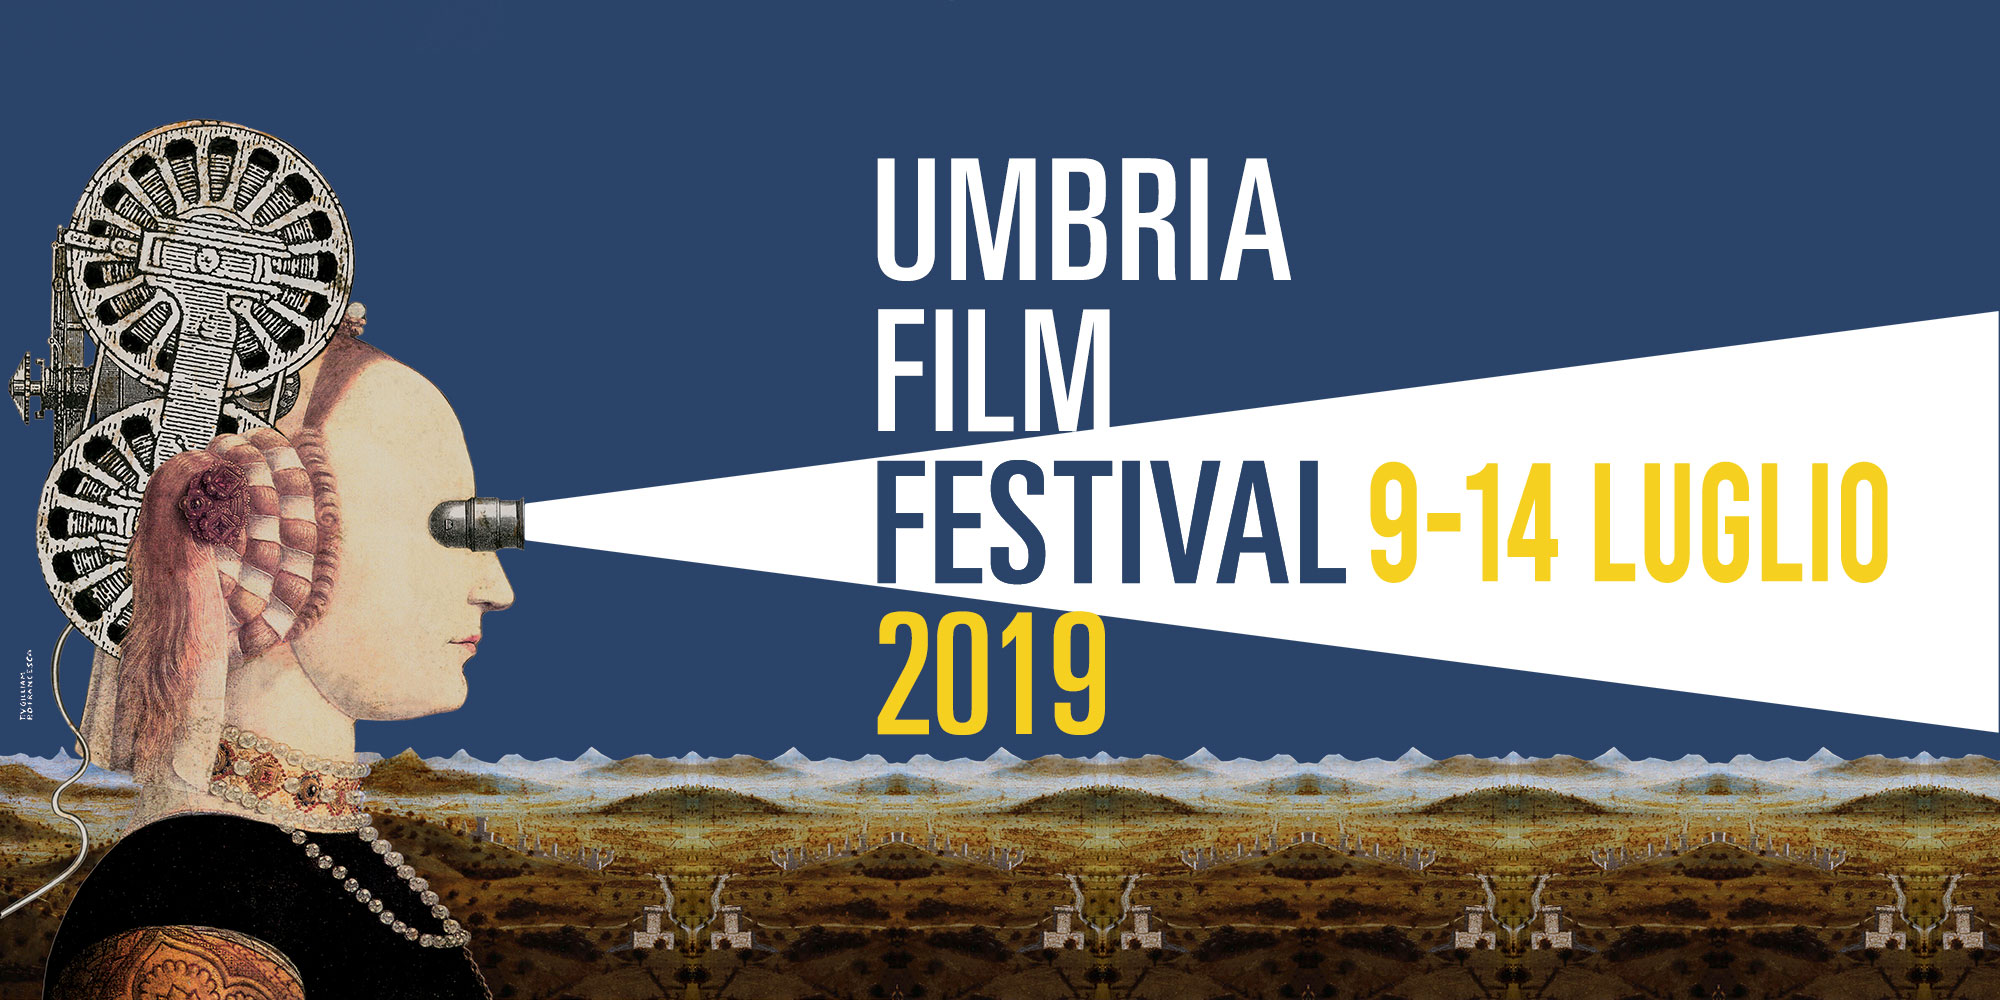 Umbria Film Festival – Un sogno che diventa realtà